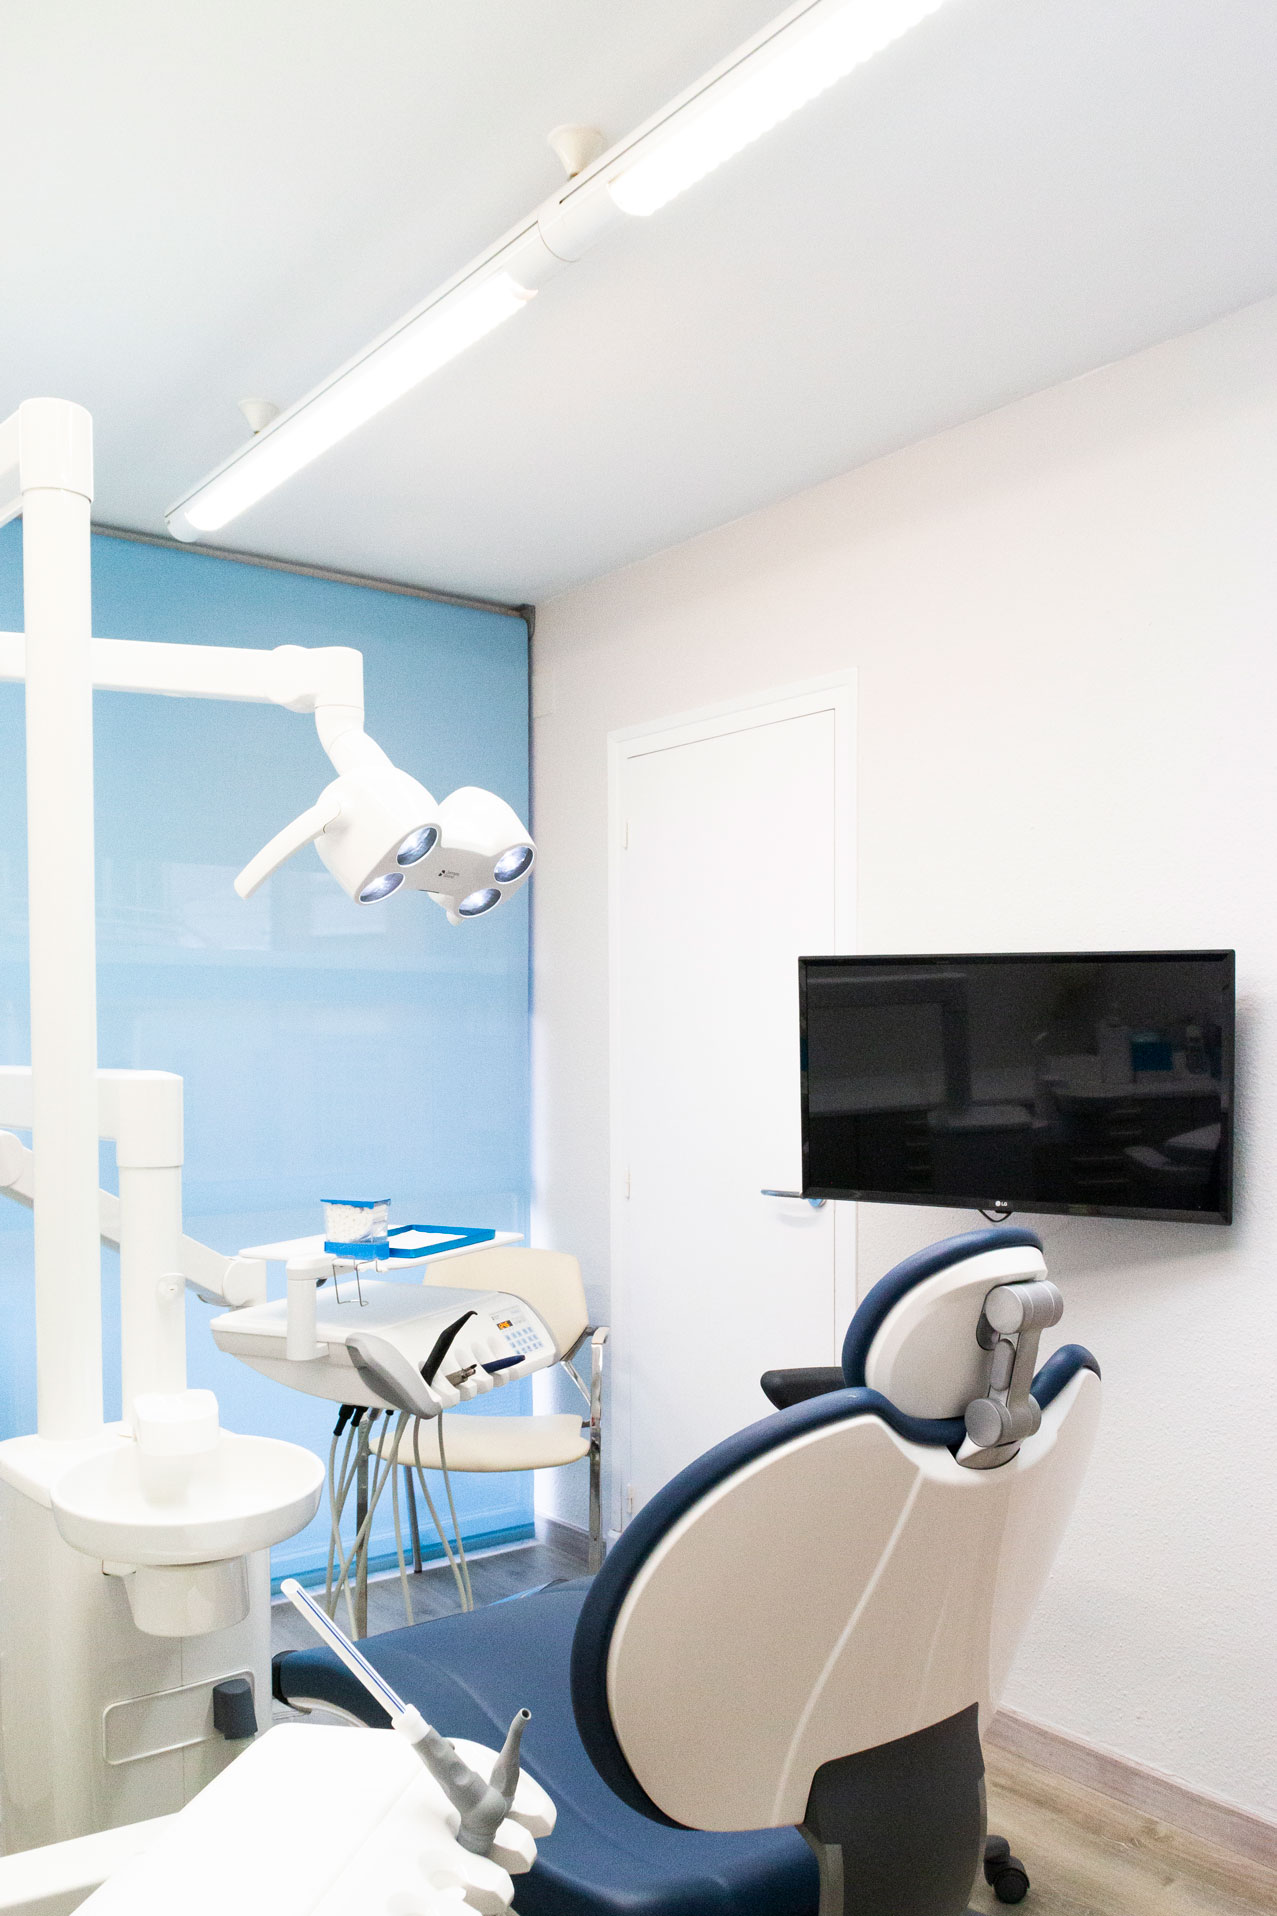 Cadira equipada amb diversos aparells i eines que el dentista utilitza per examinar i tractar els pacients